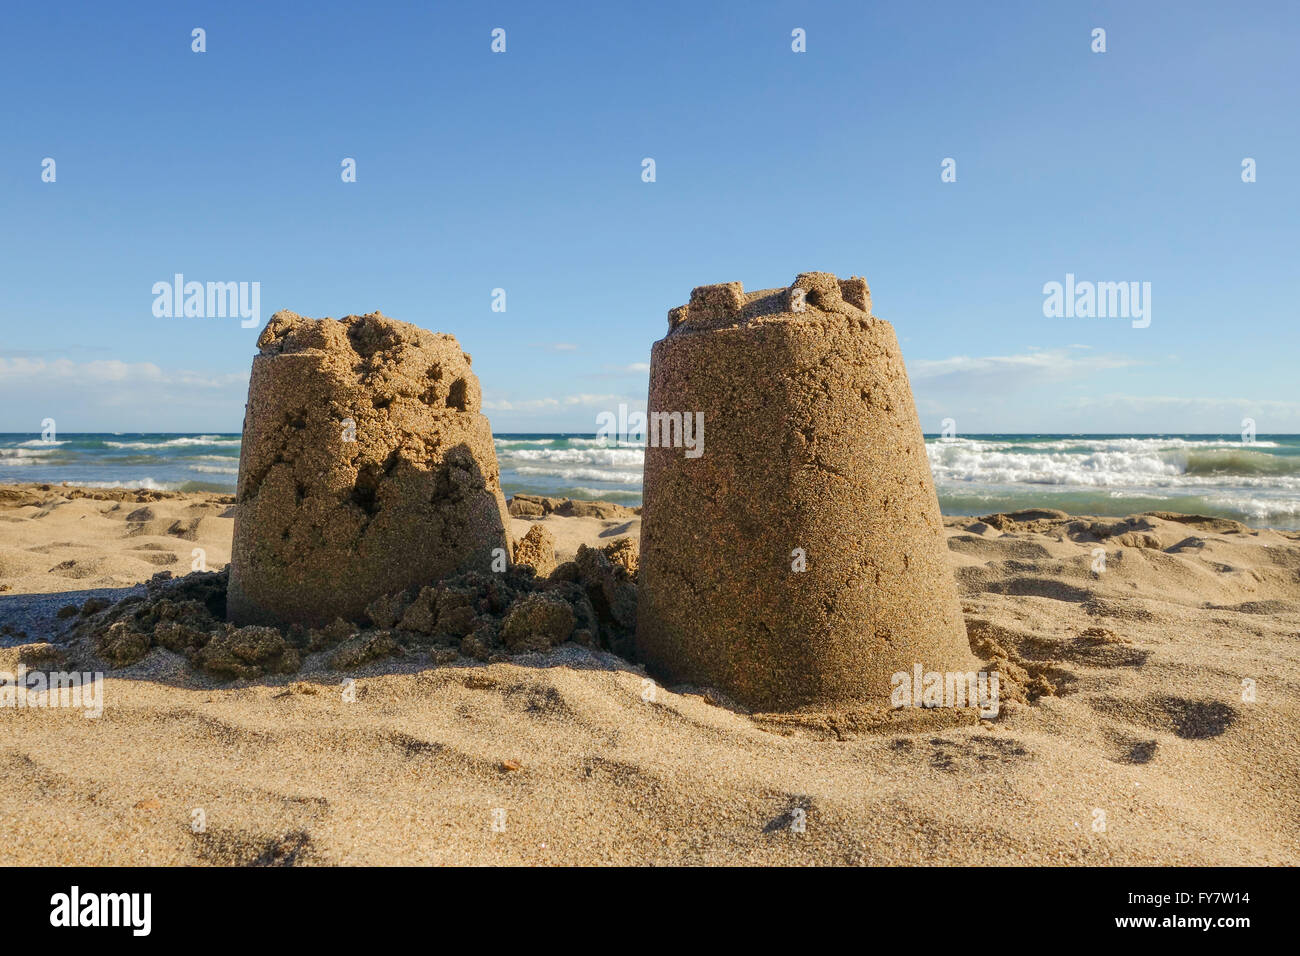 Castello di sabbia sulla spiaggia, Marbella. Costa del Sol, Spagna. Foto Stock